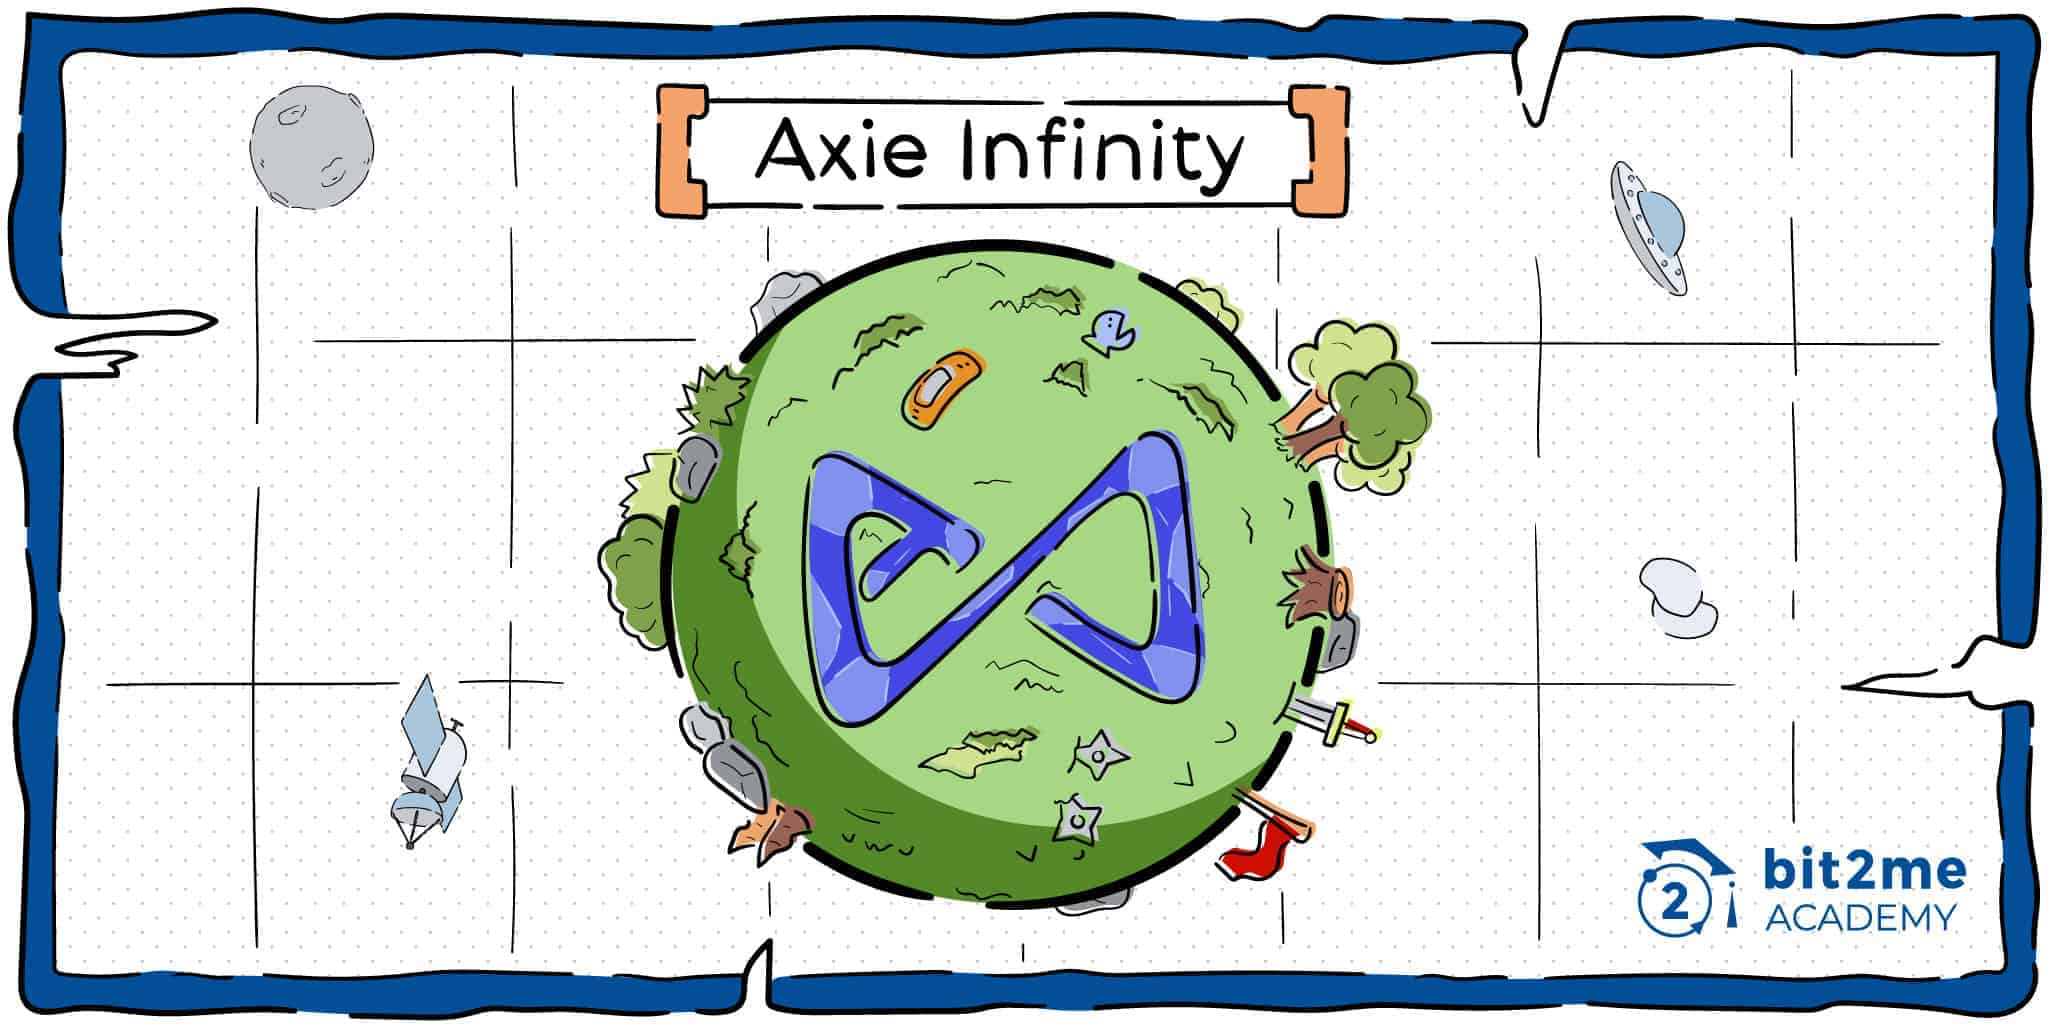 Axie Infinity, a Play2Earn game on Blockchain